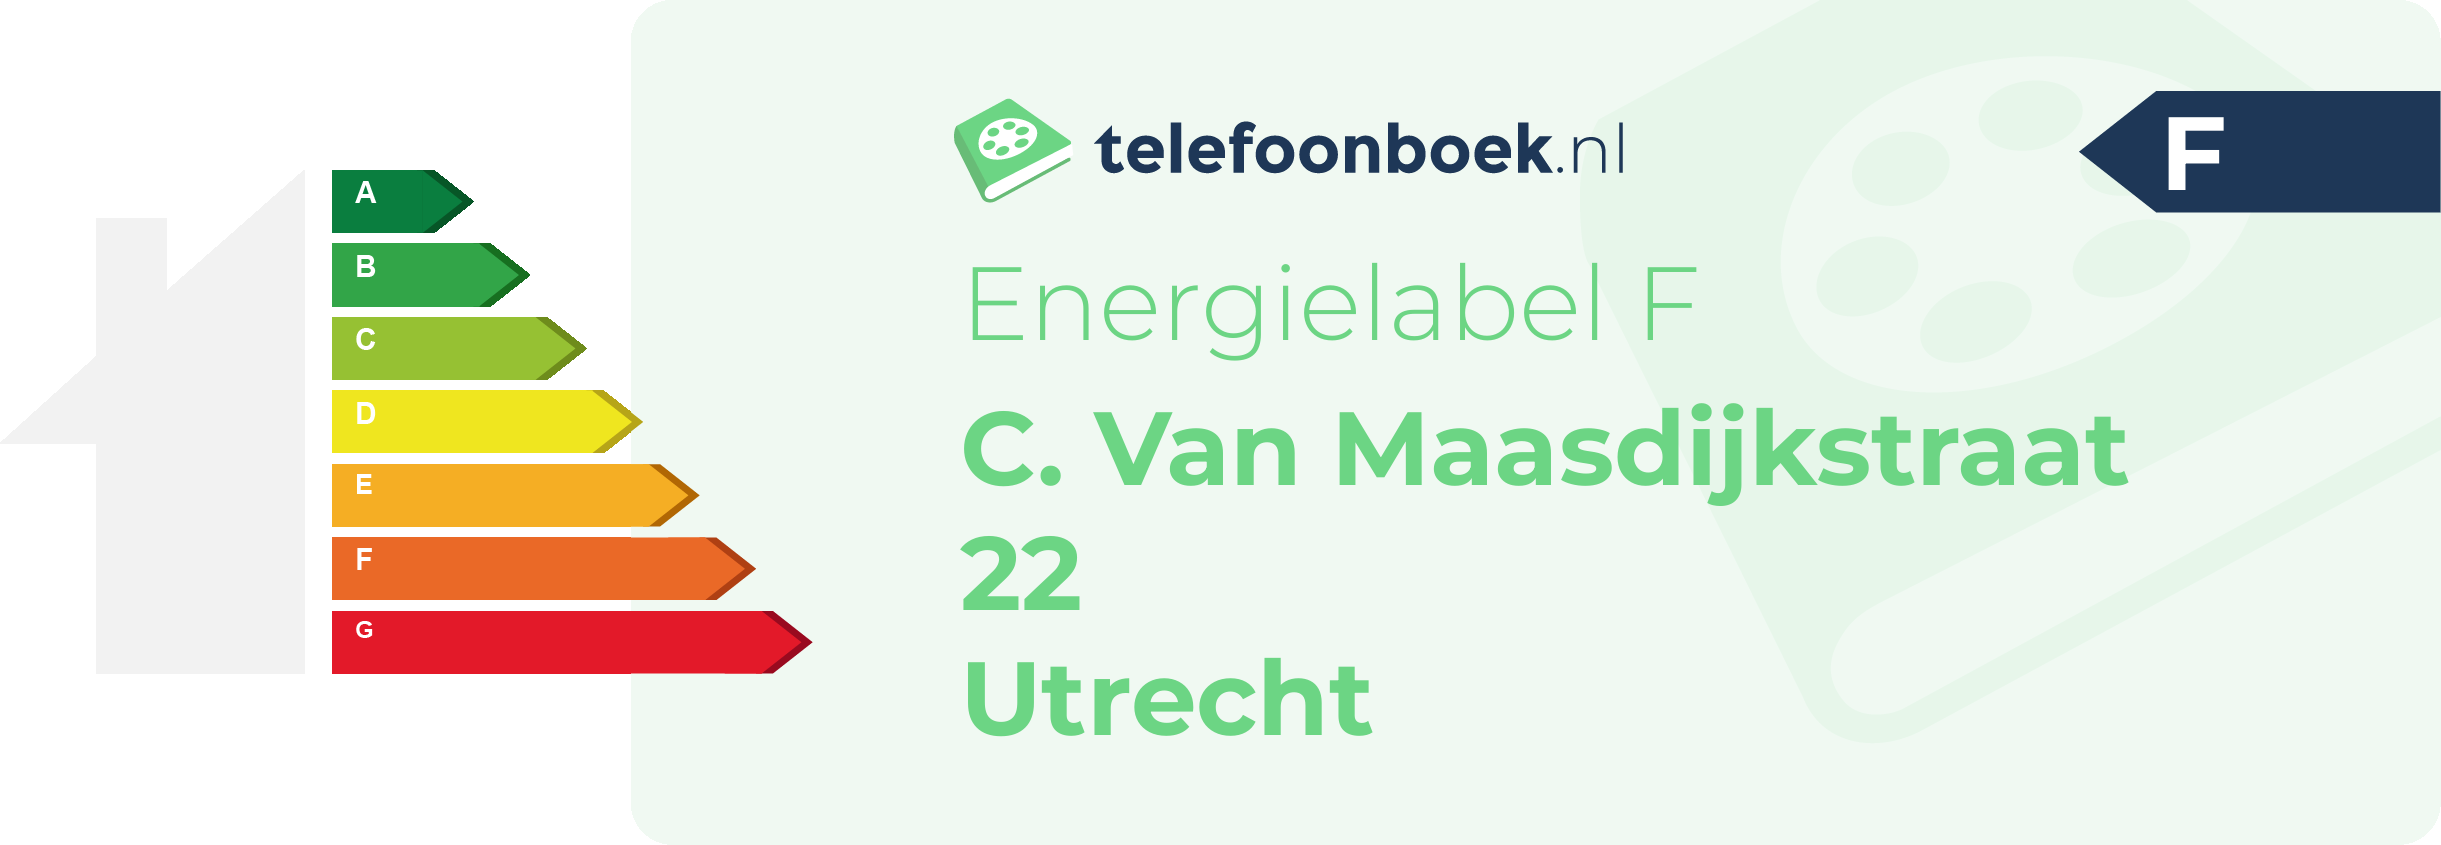 Energielabel C. Van Maasdijkstraat 22 Utrecht